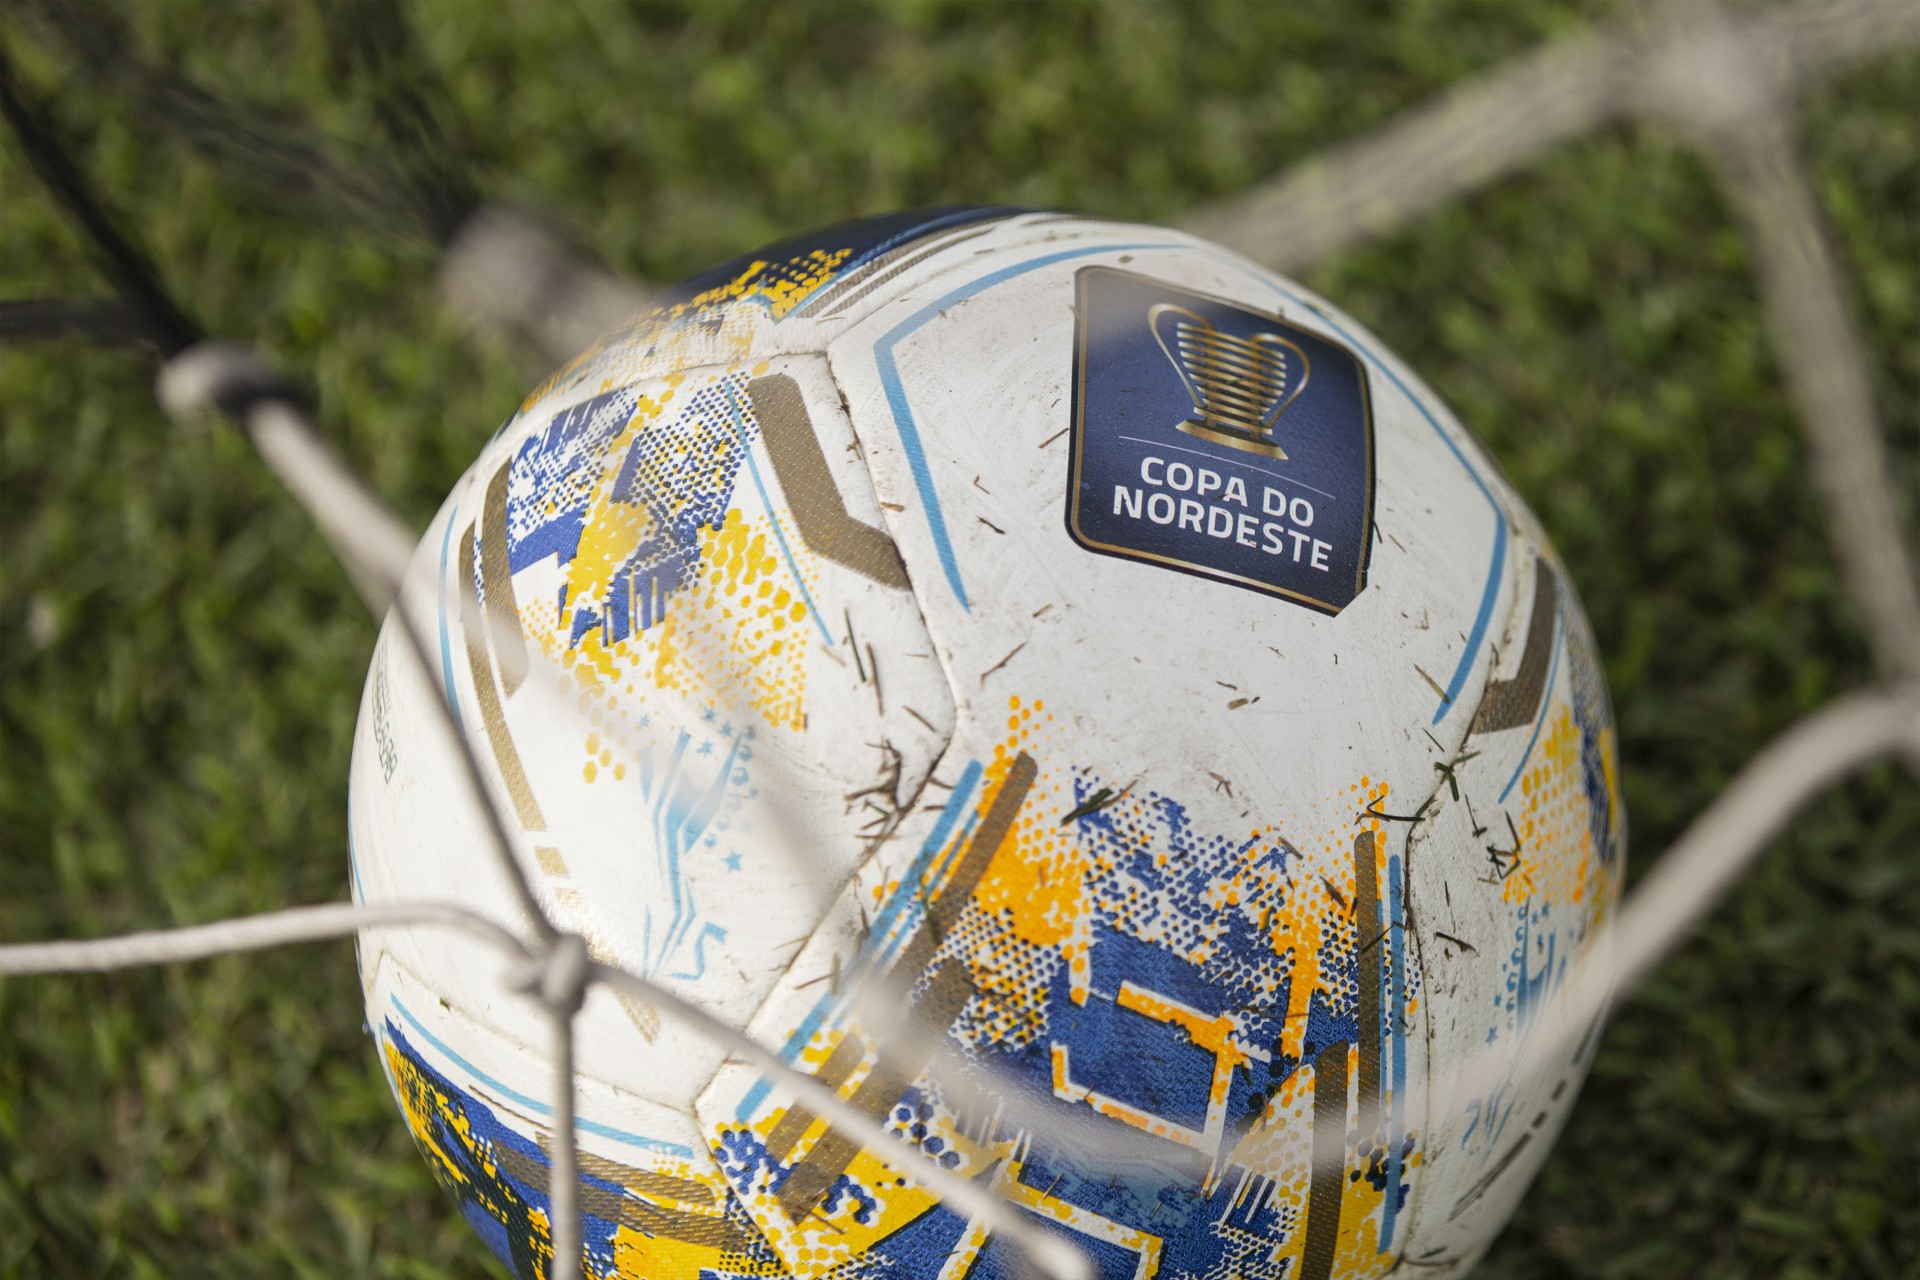 Bola da Copa do Nordeste 2021 no gramado (Foto: Divulgação/Ceará SC)